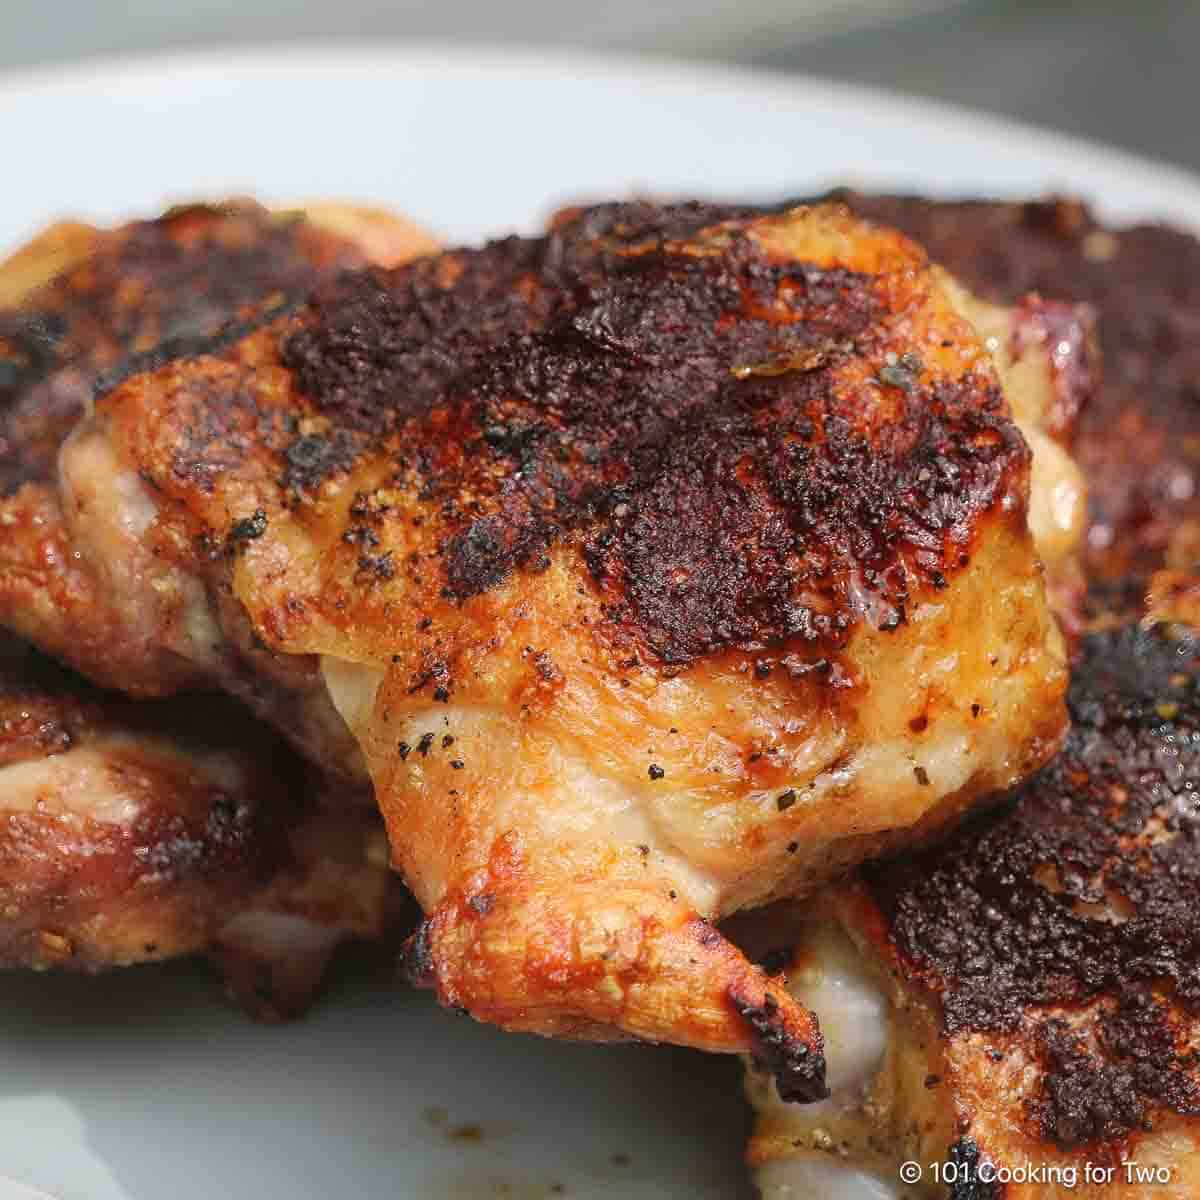 cuisse de poulet grillée avec un peu de charbon